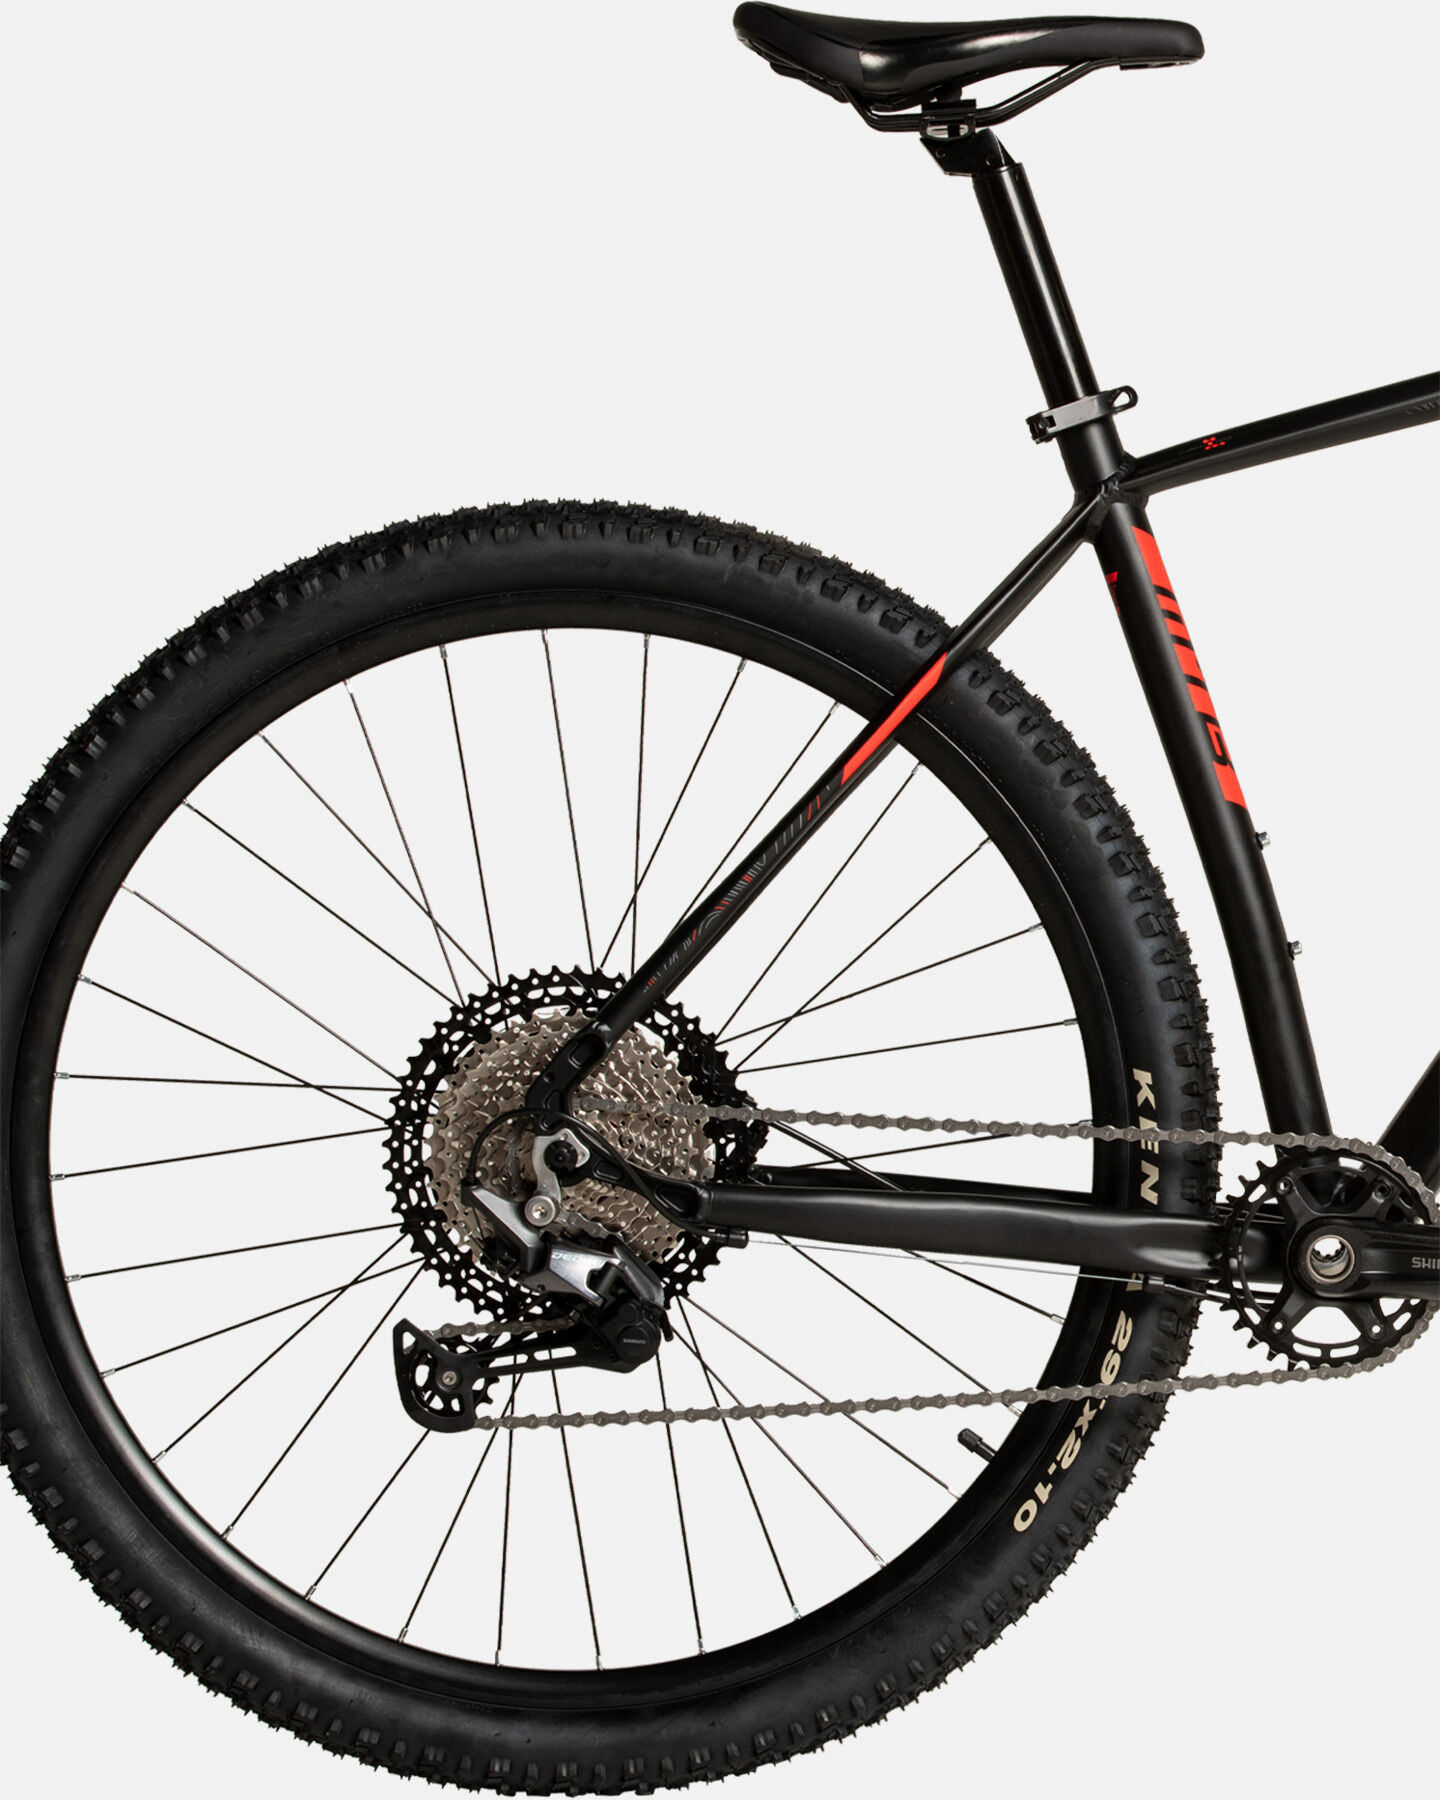  Mountain bike CARNIELLI CRN 6000  S4113178|1|17 scatto 3